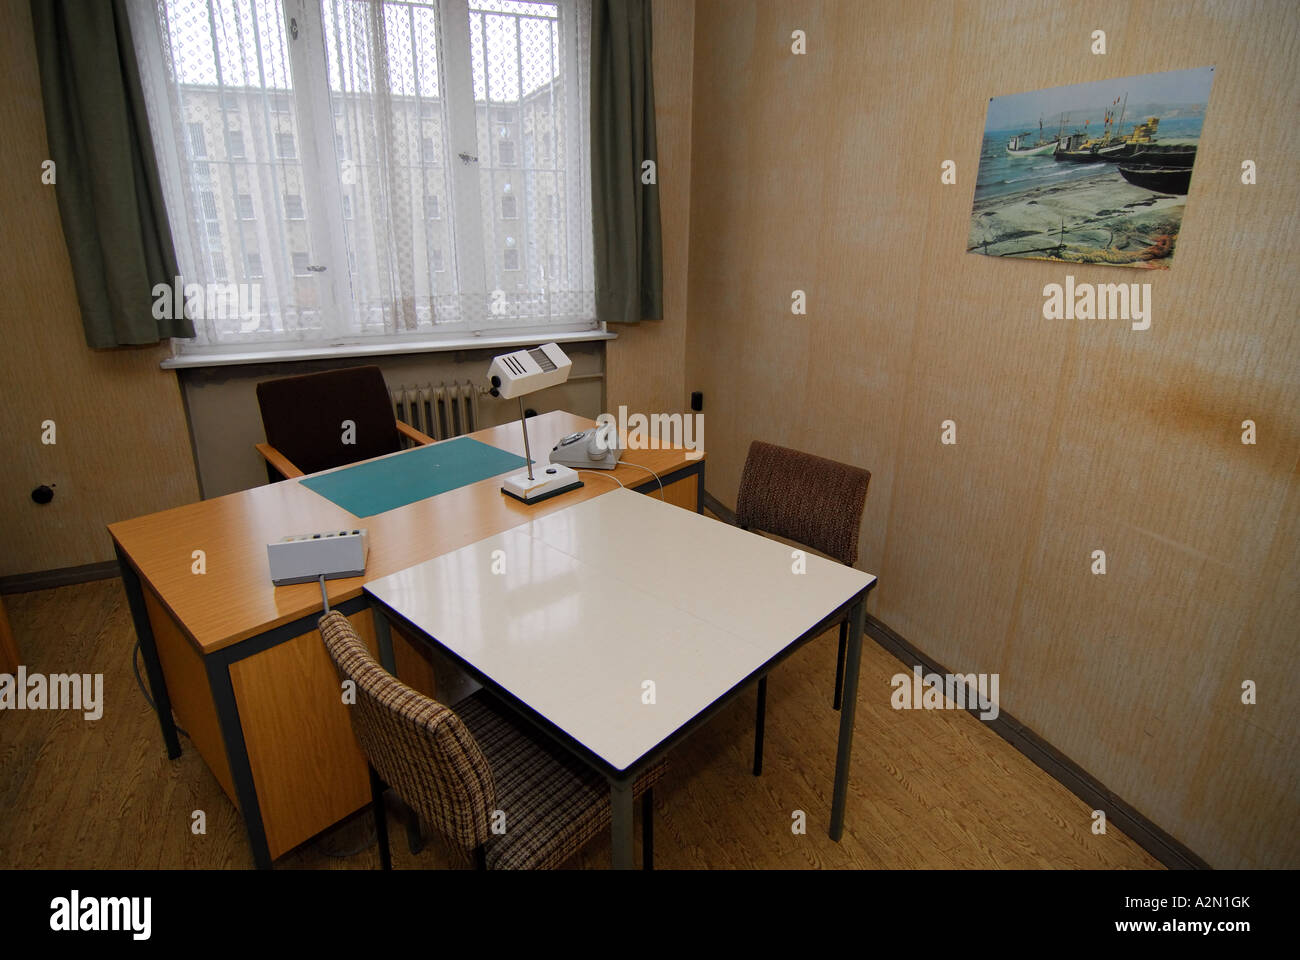 Interrogation room, former East German political prison Stock Photo